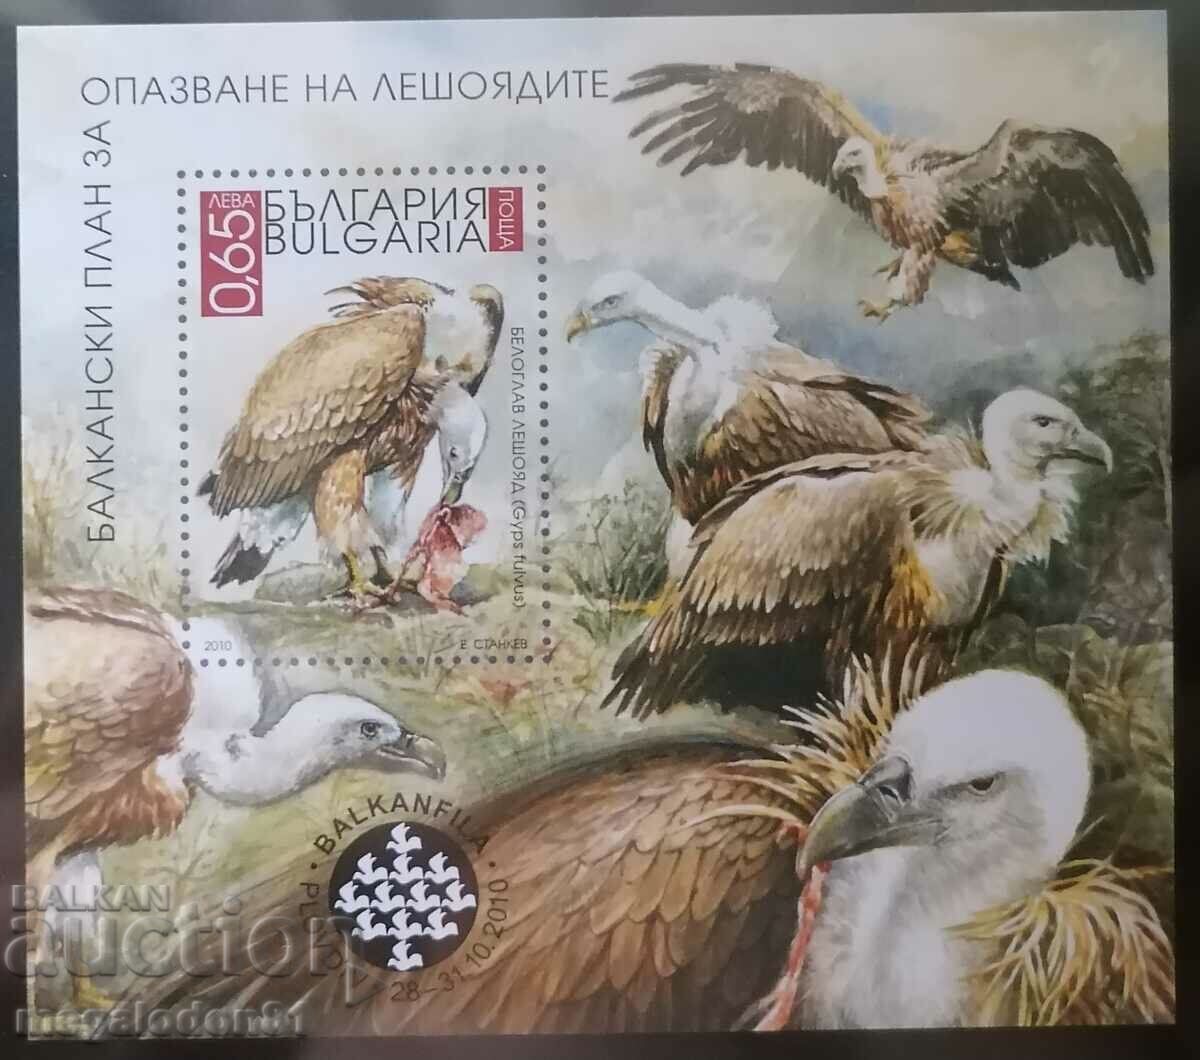 България - блок Балканфила 2010, опазване на лешоядите